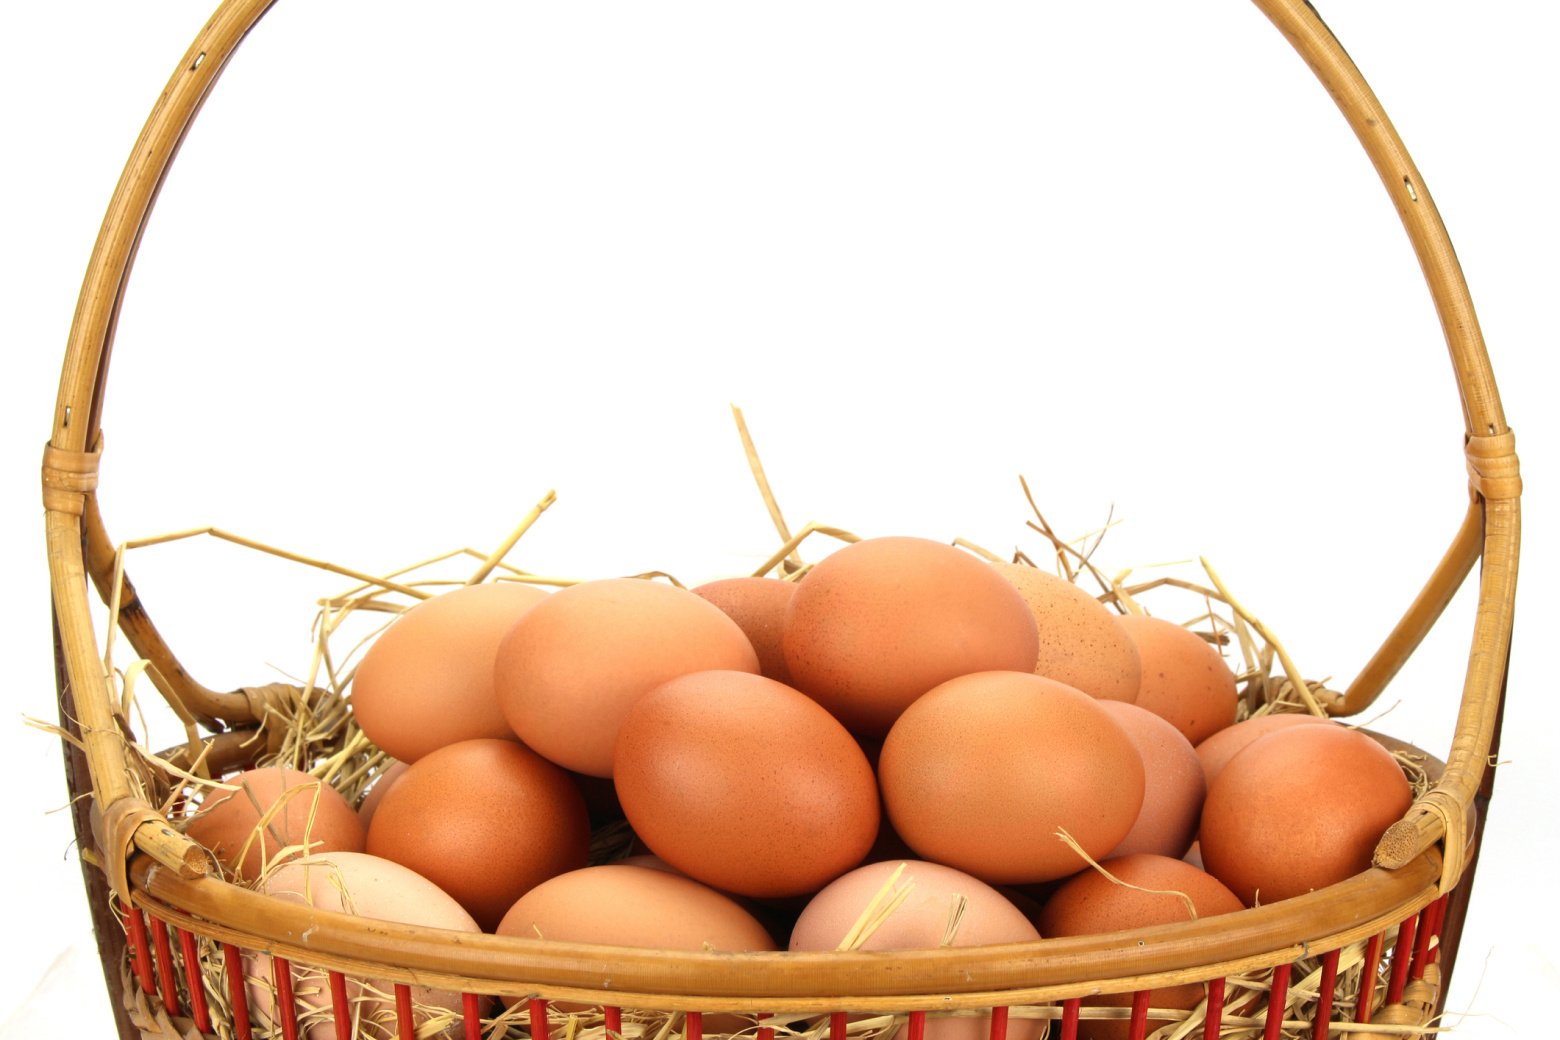 Brown eggs in a wicker basket